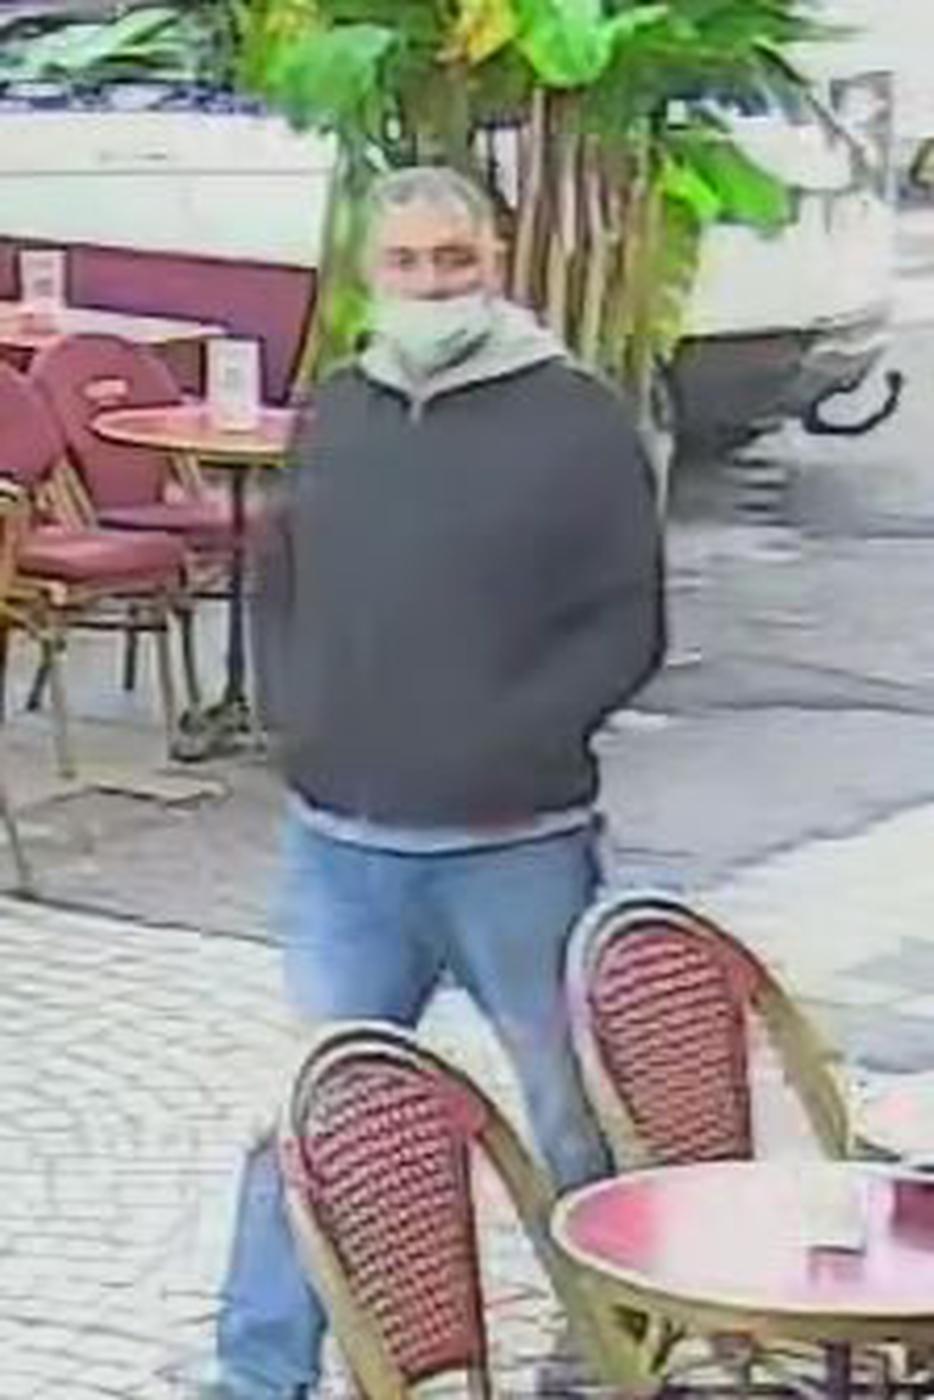 Wer kennt diesen Mann? Die Polizei sucht ihn im Zusammenhang mit einem mysteriösen Todesfall in Baden-Baden. 